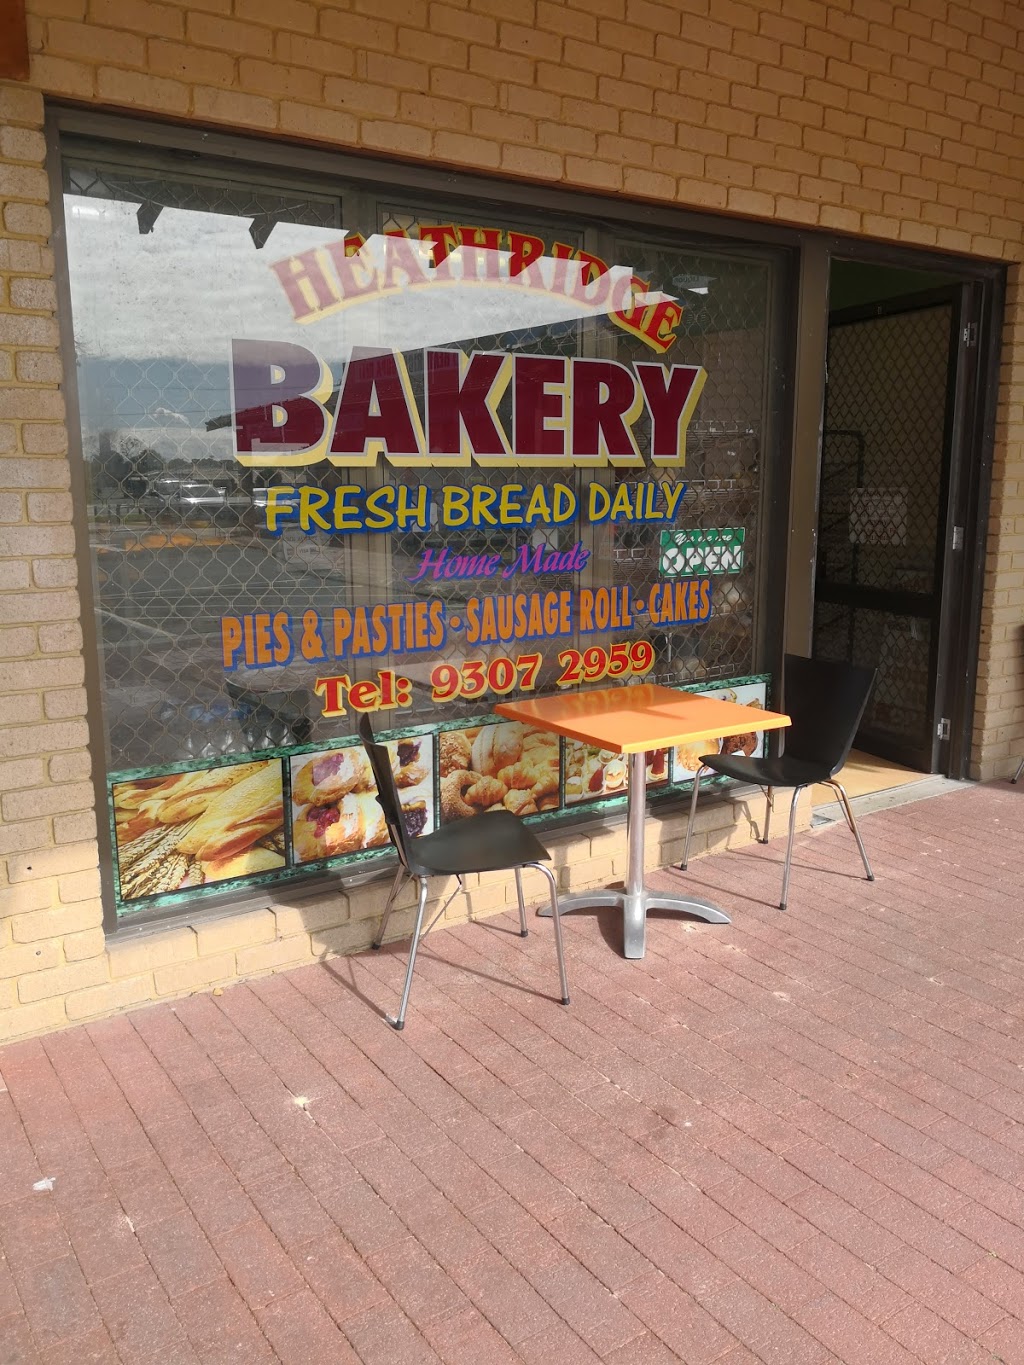 Heathridge Bakery | bakery | Caridean St, Heathridge WA 6027, Australia | 93072959 OR +61 93072959